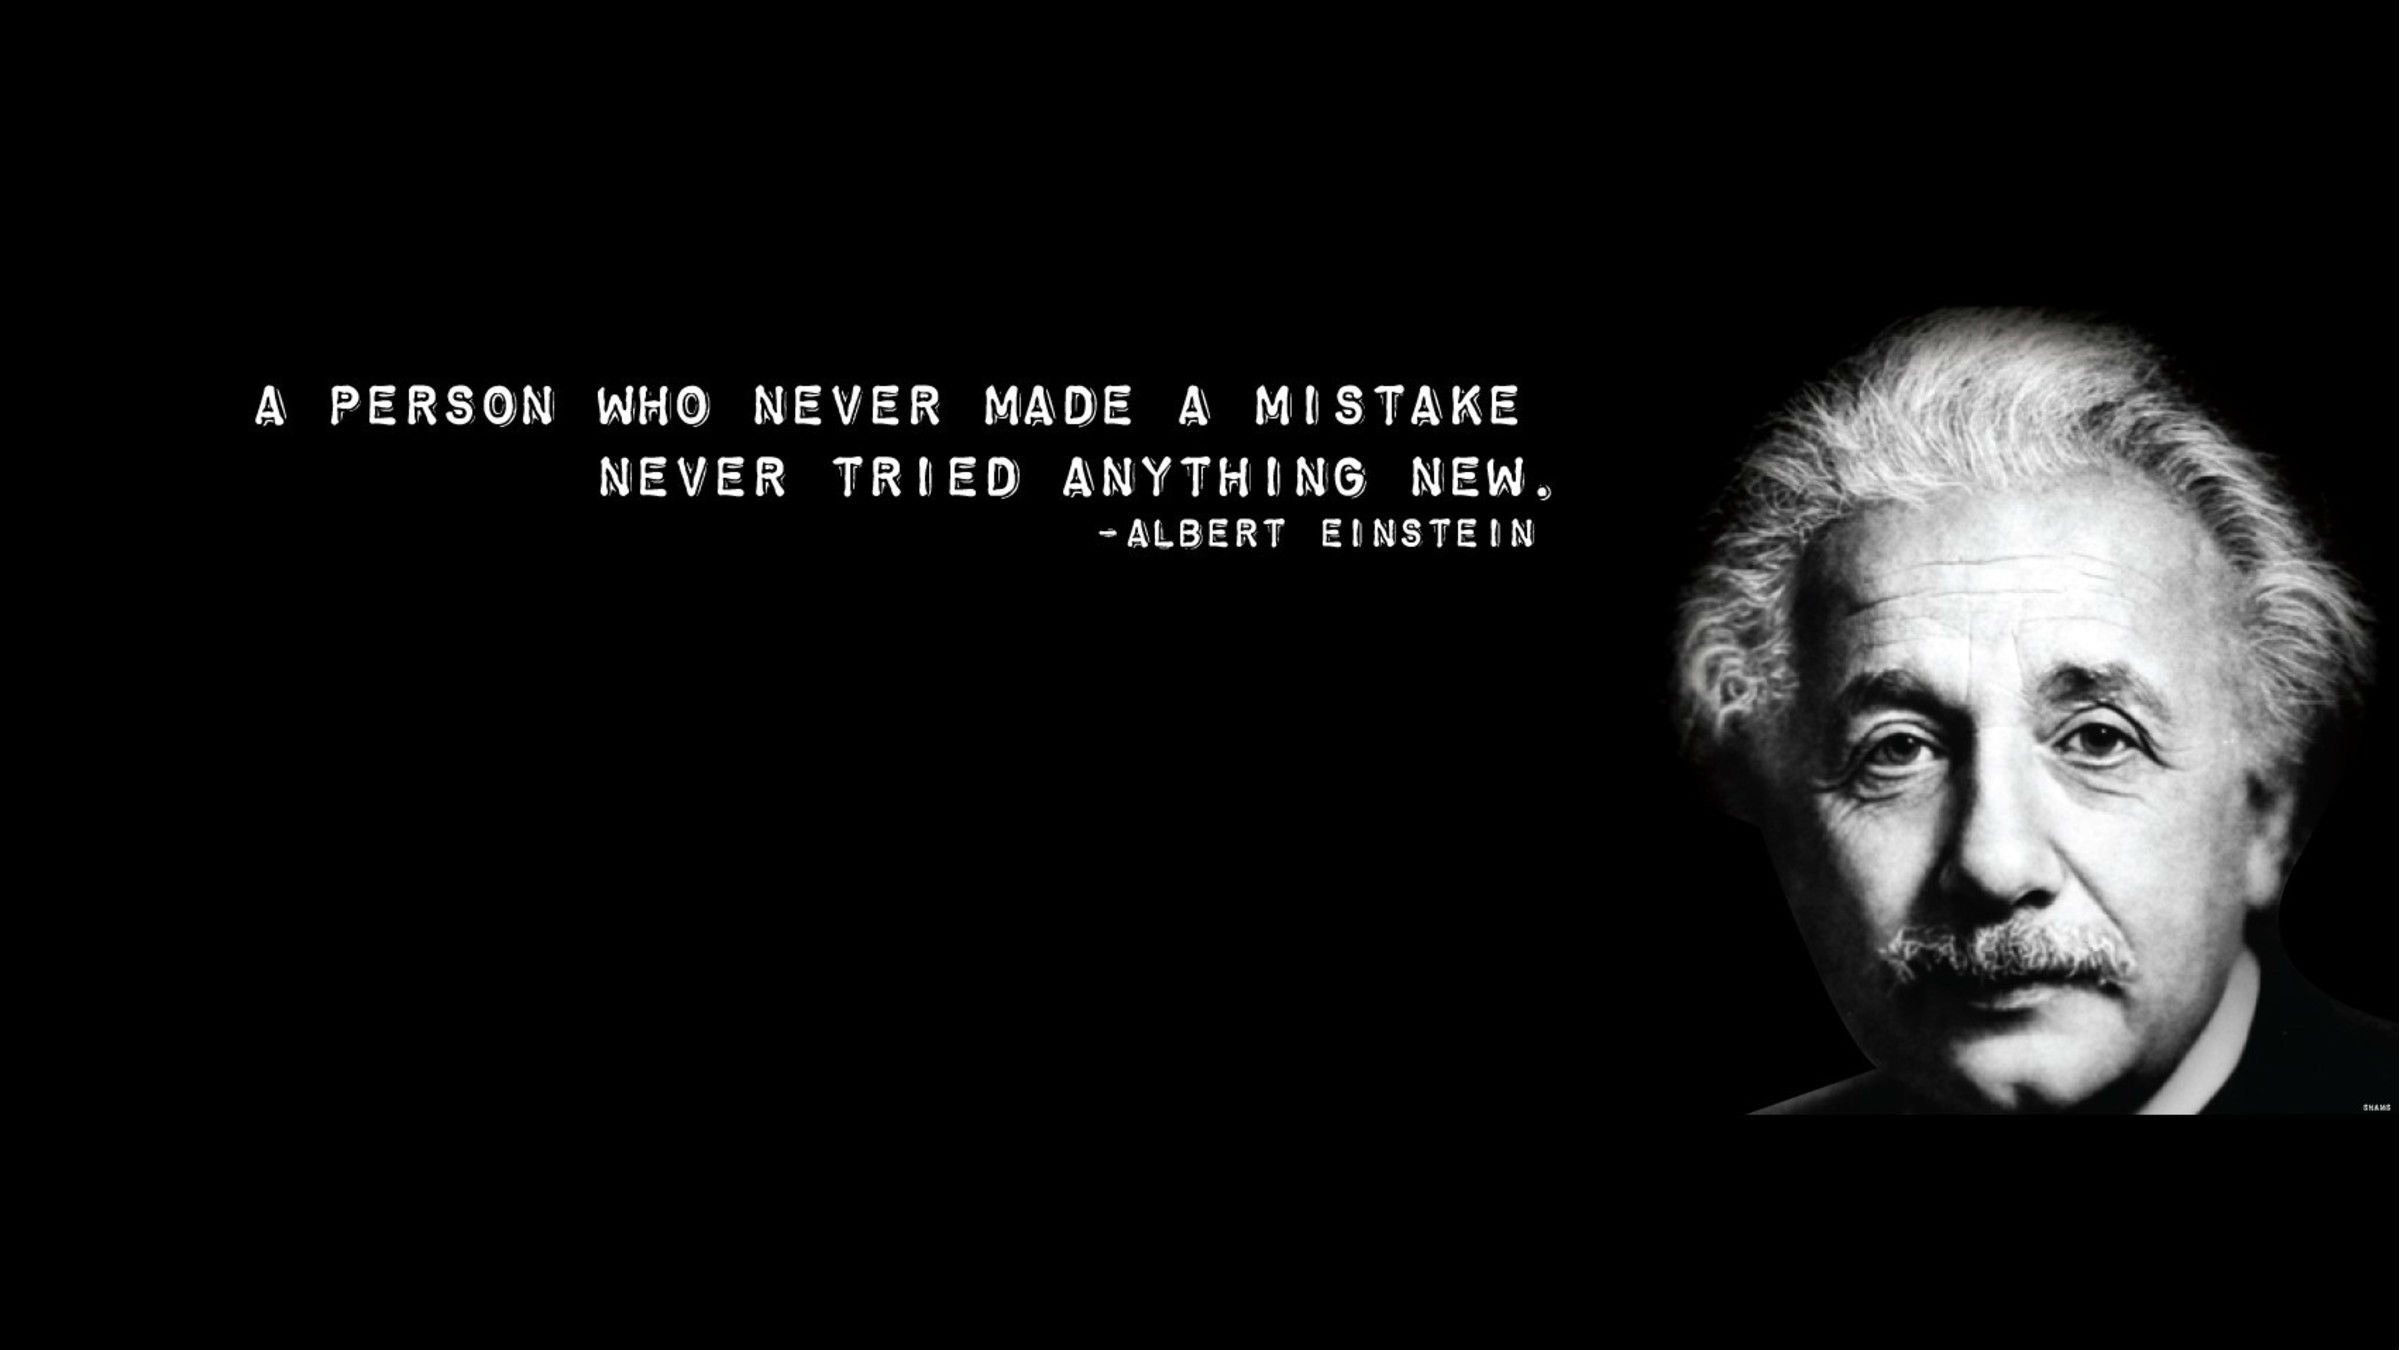 알버트 아인슈타인 바탕 화면,본문,머리,폰트,인간,검정색과 흰색